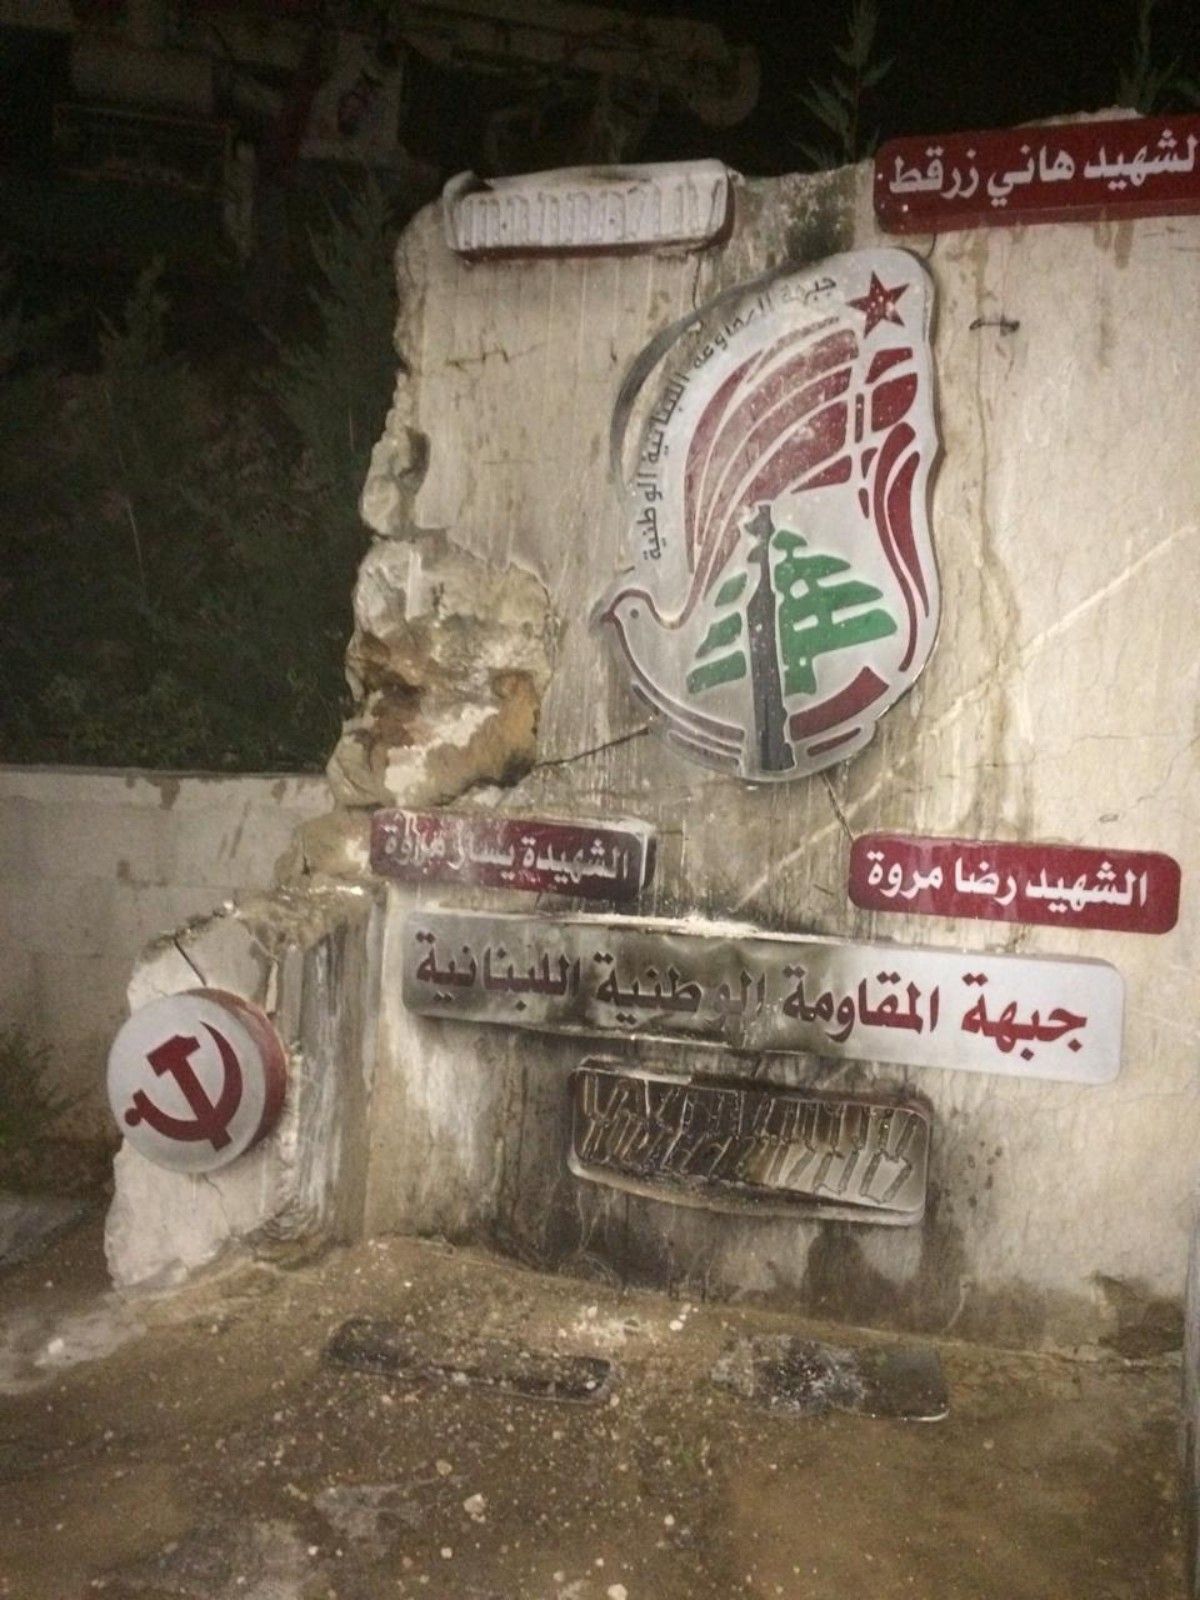 #بالصور إحراق مجسم شهداء جبهة المقاومة الوطنية اللبنانية في بلدة الزرارية.